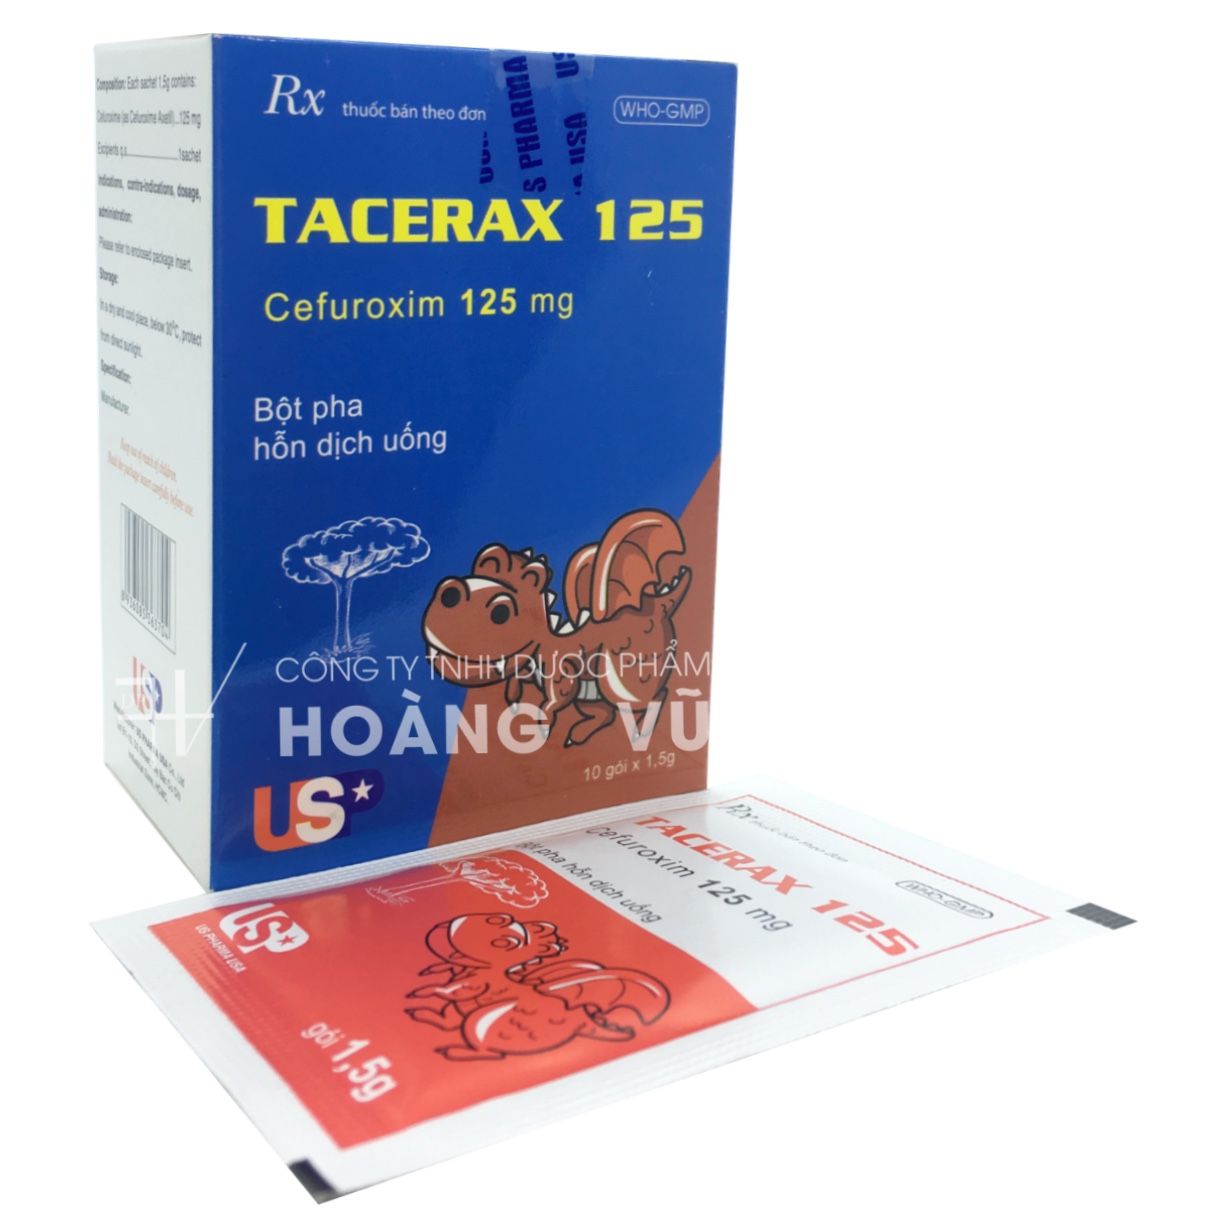 TACERAX 125 (T/152H/10G)